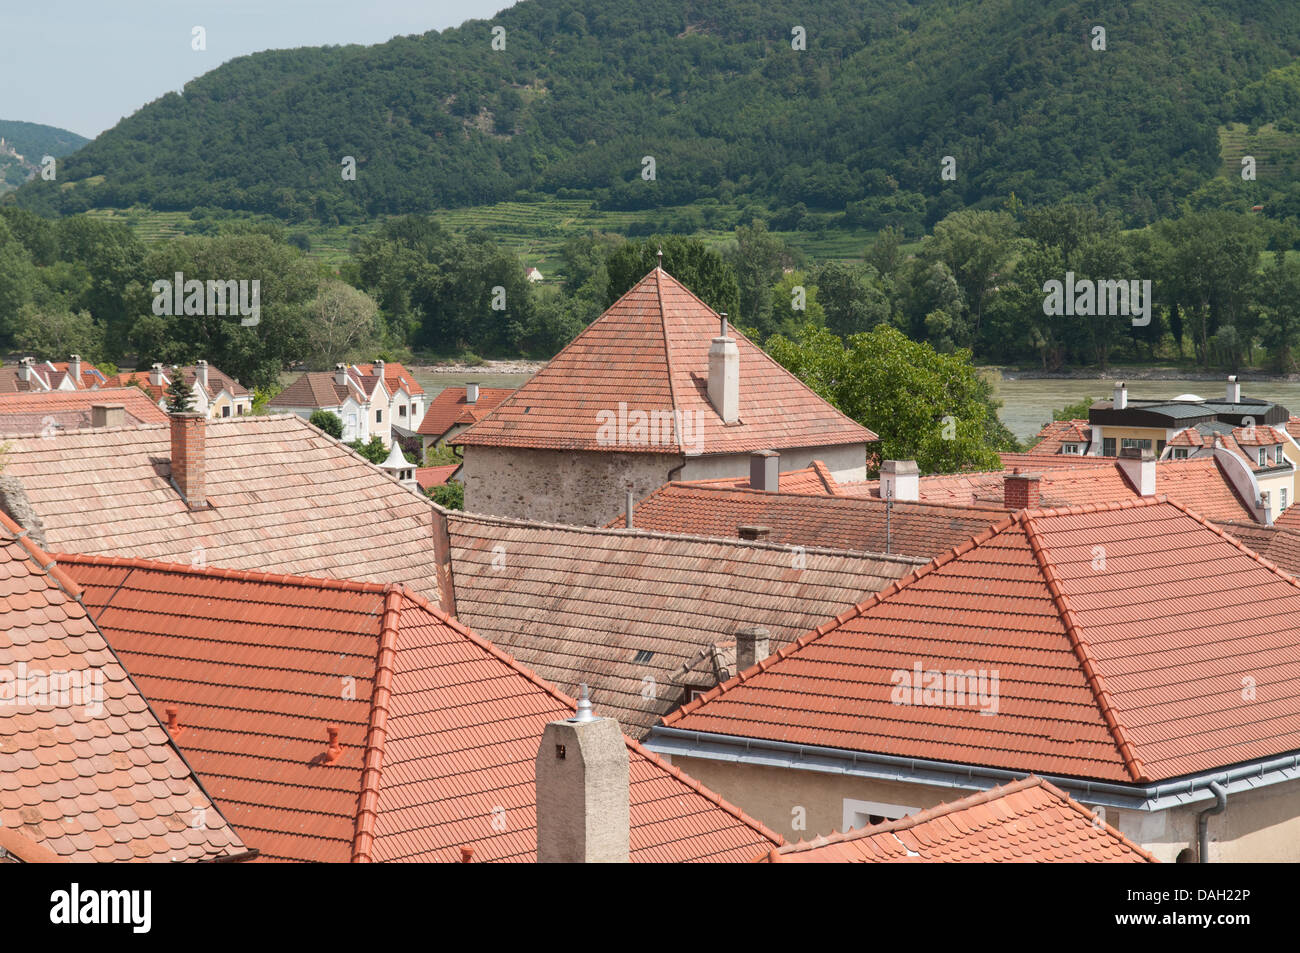 Tile roofs at Weissenkirchen in der Wachau in the Danube valley, Lower Austria. Stock Photo